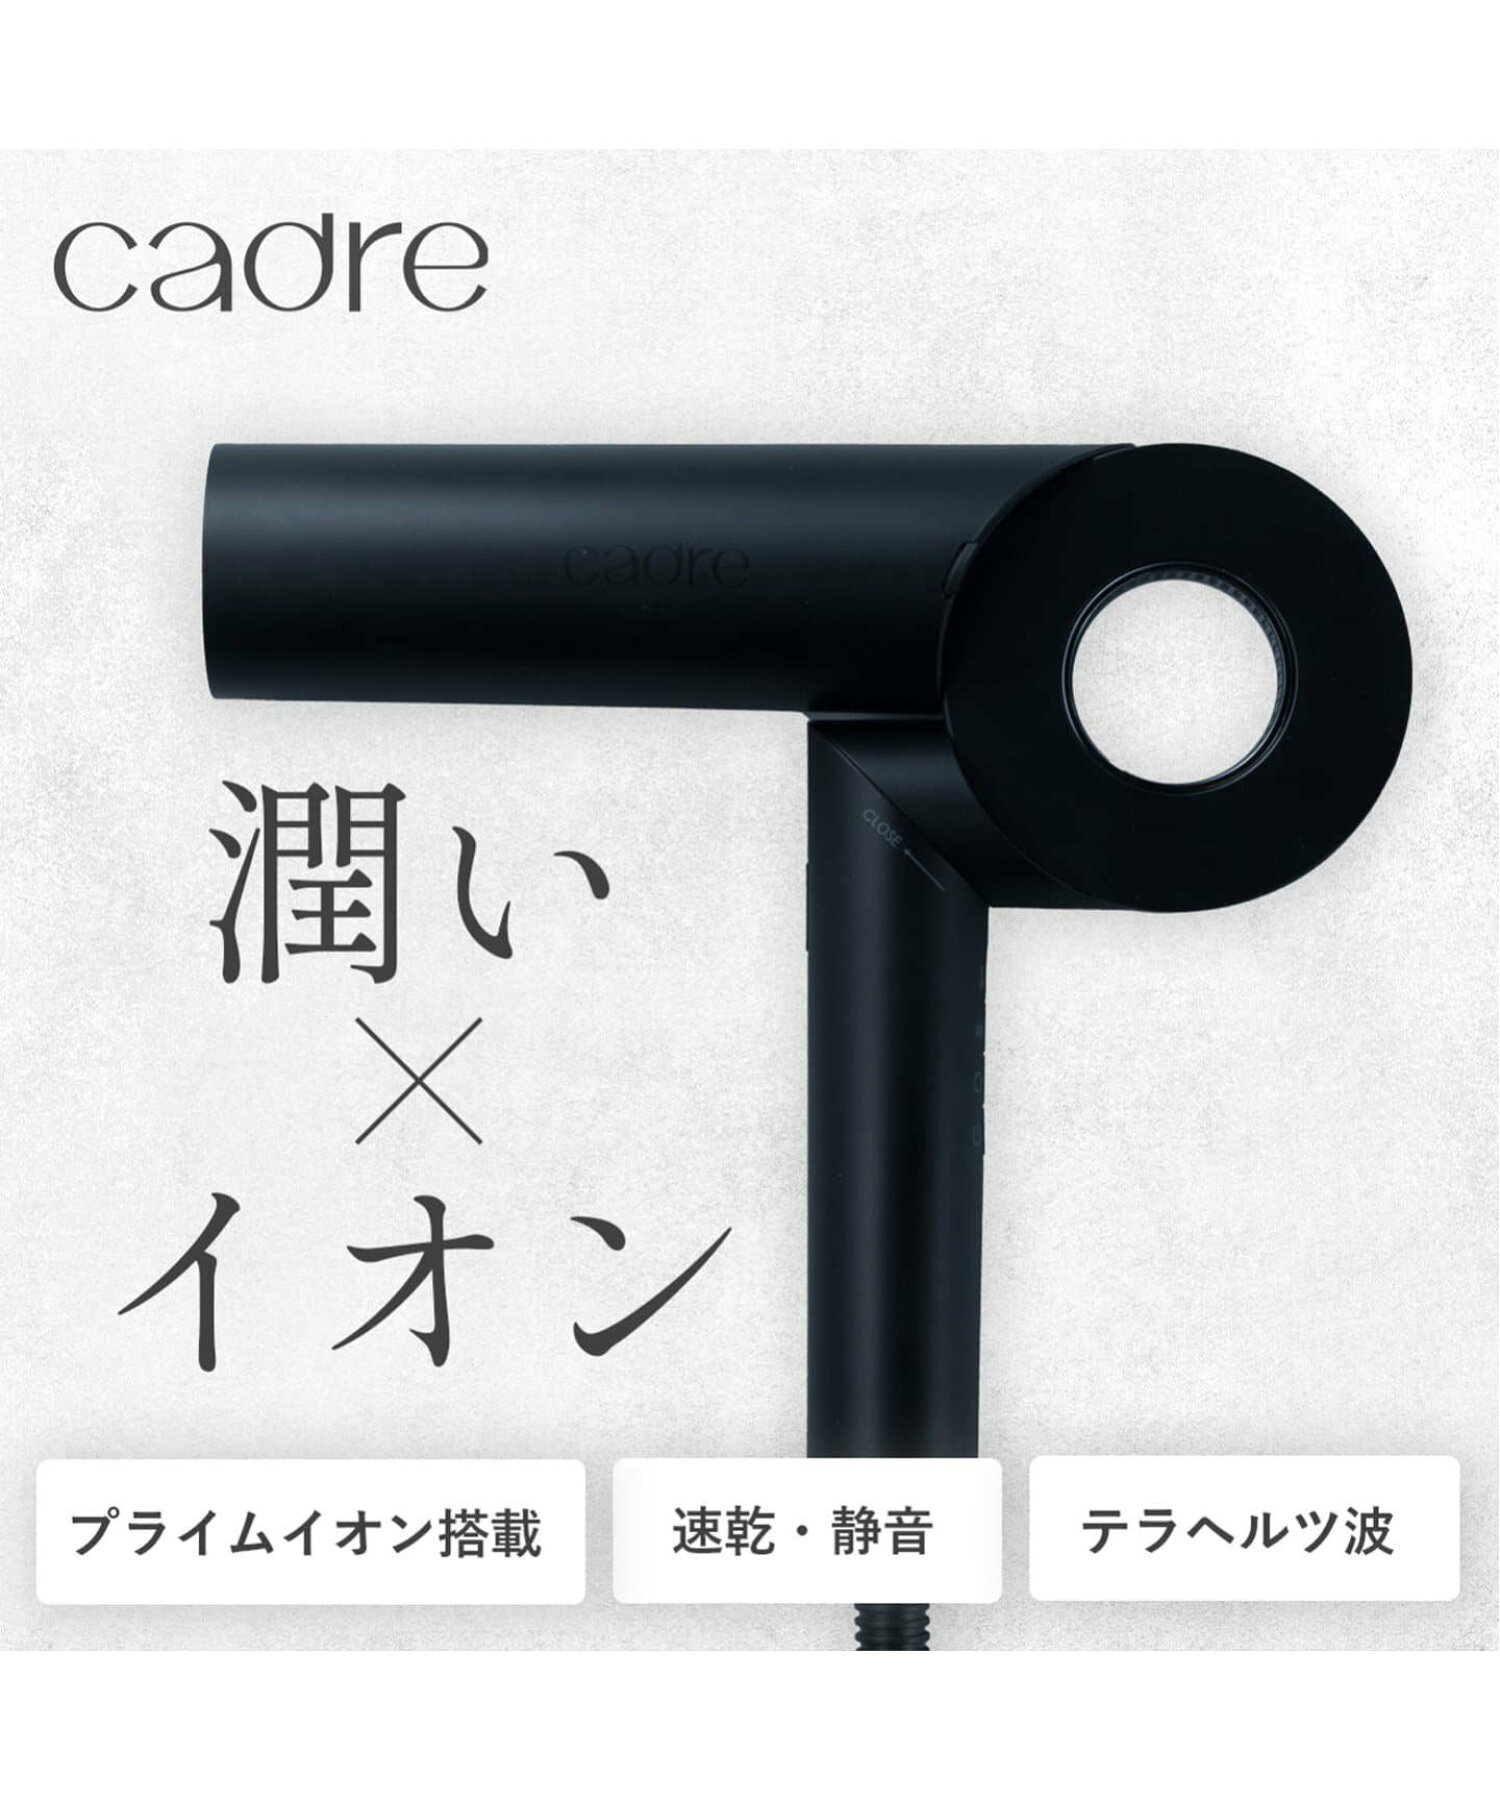 【CADRE/カドレ】 HAIR DRYER ヘア ドライヤー